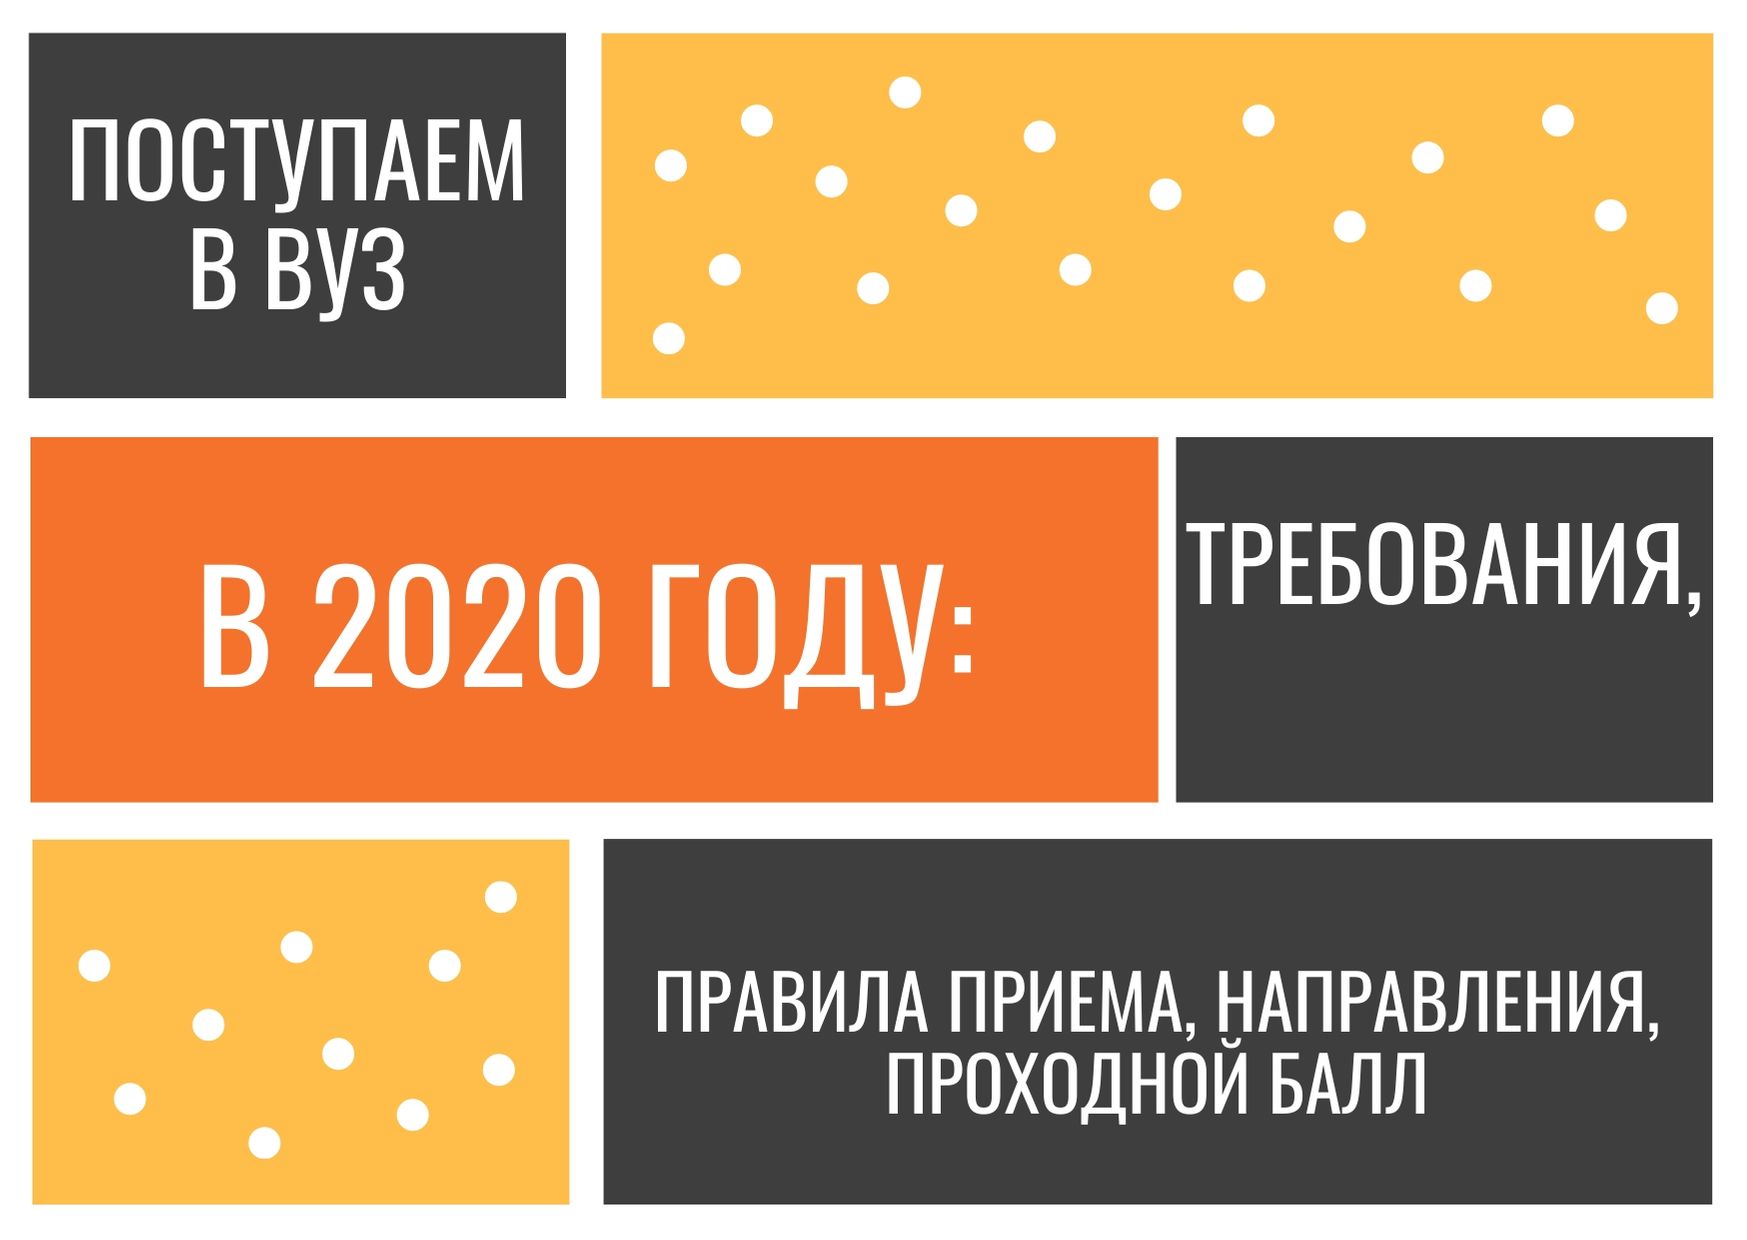 Поступаем в ВУЗ в 2020 году: требования, правила приема, направления, проходной балл